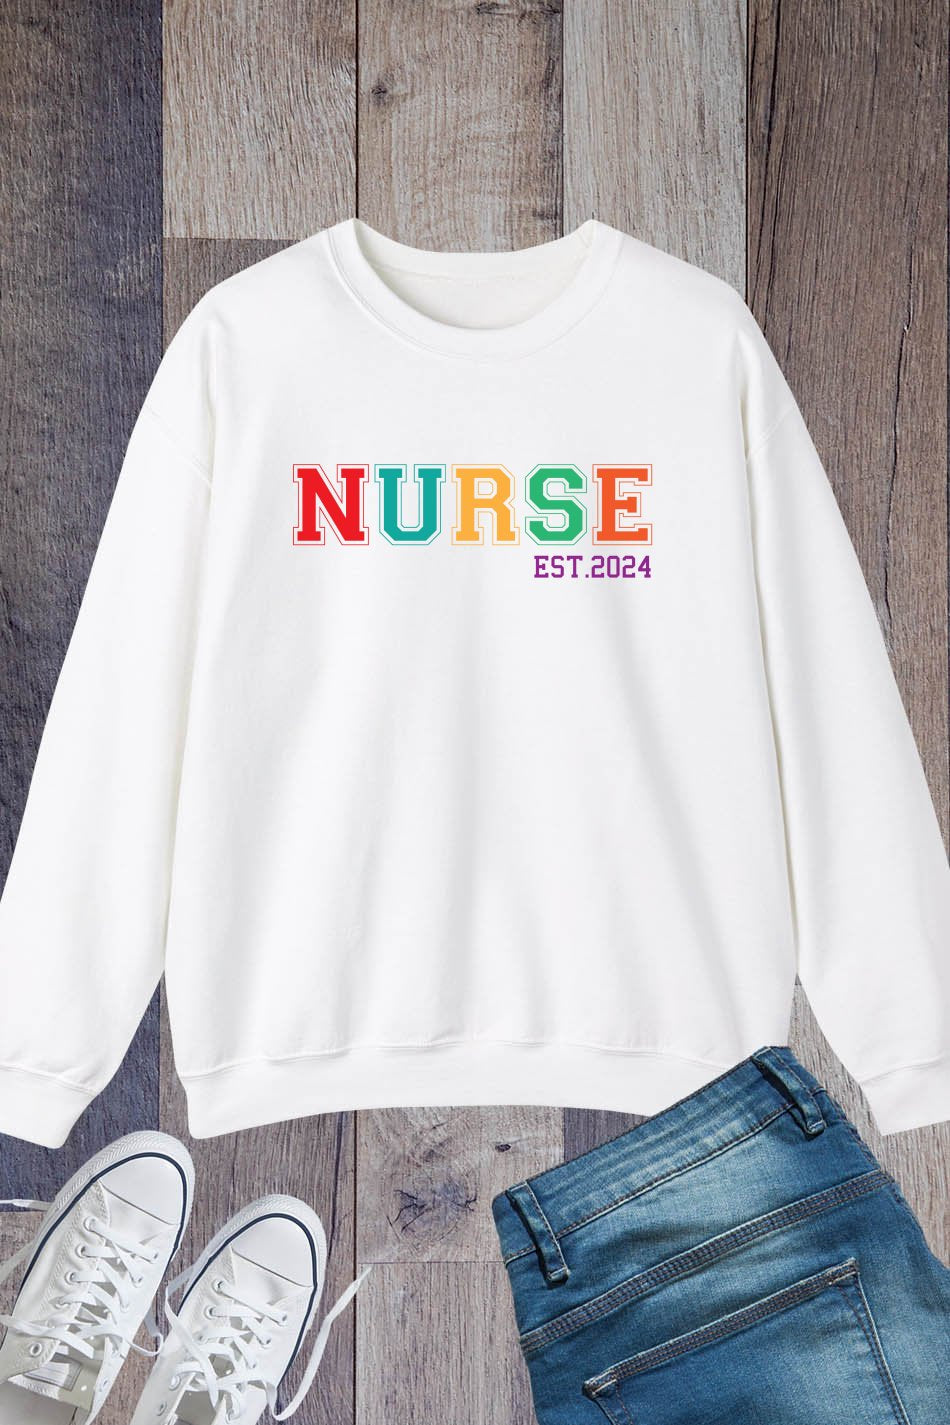 Custom Nurse Life Sweatshirt